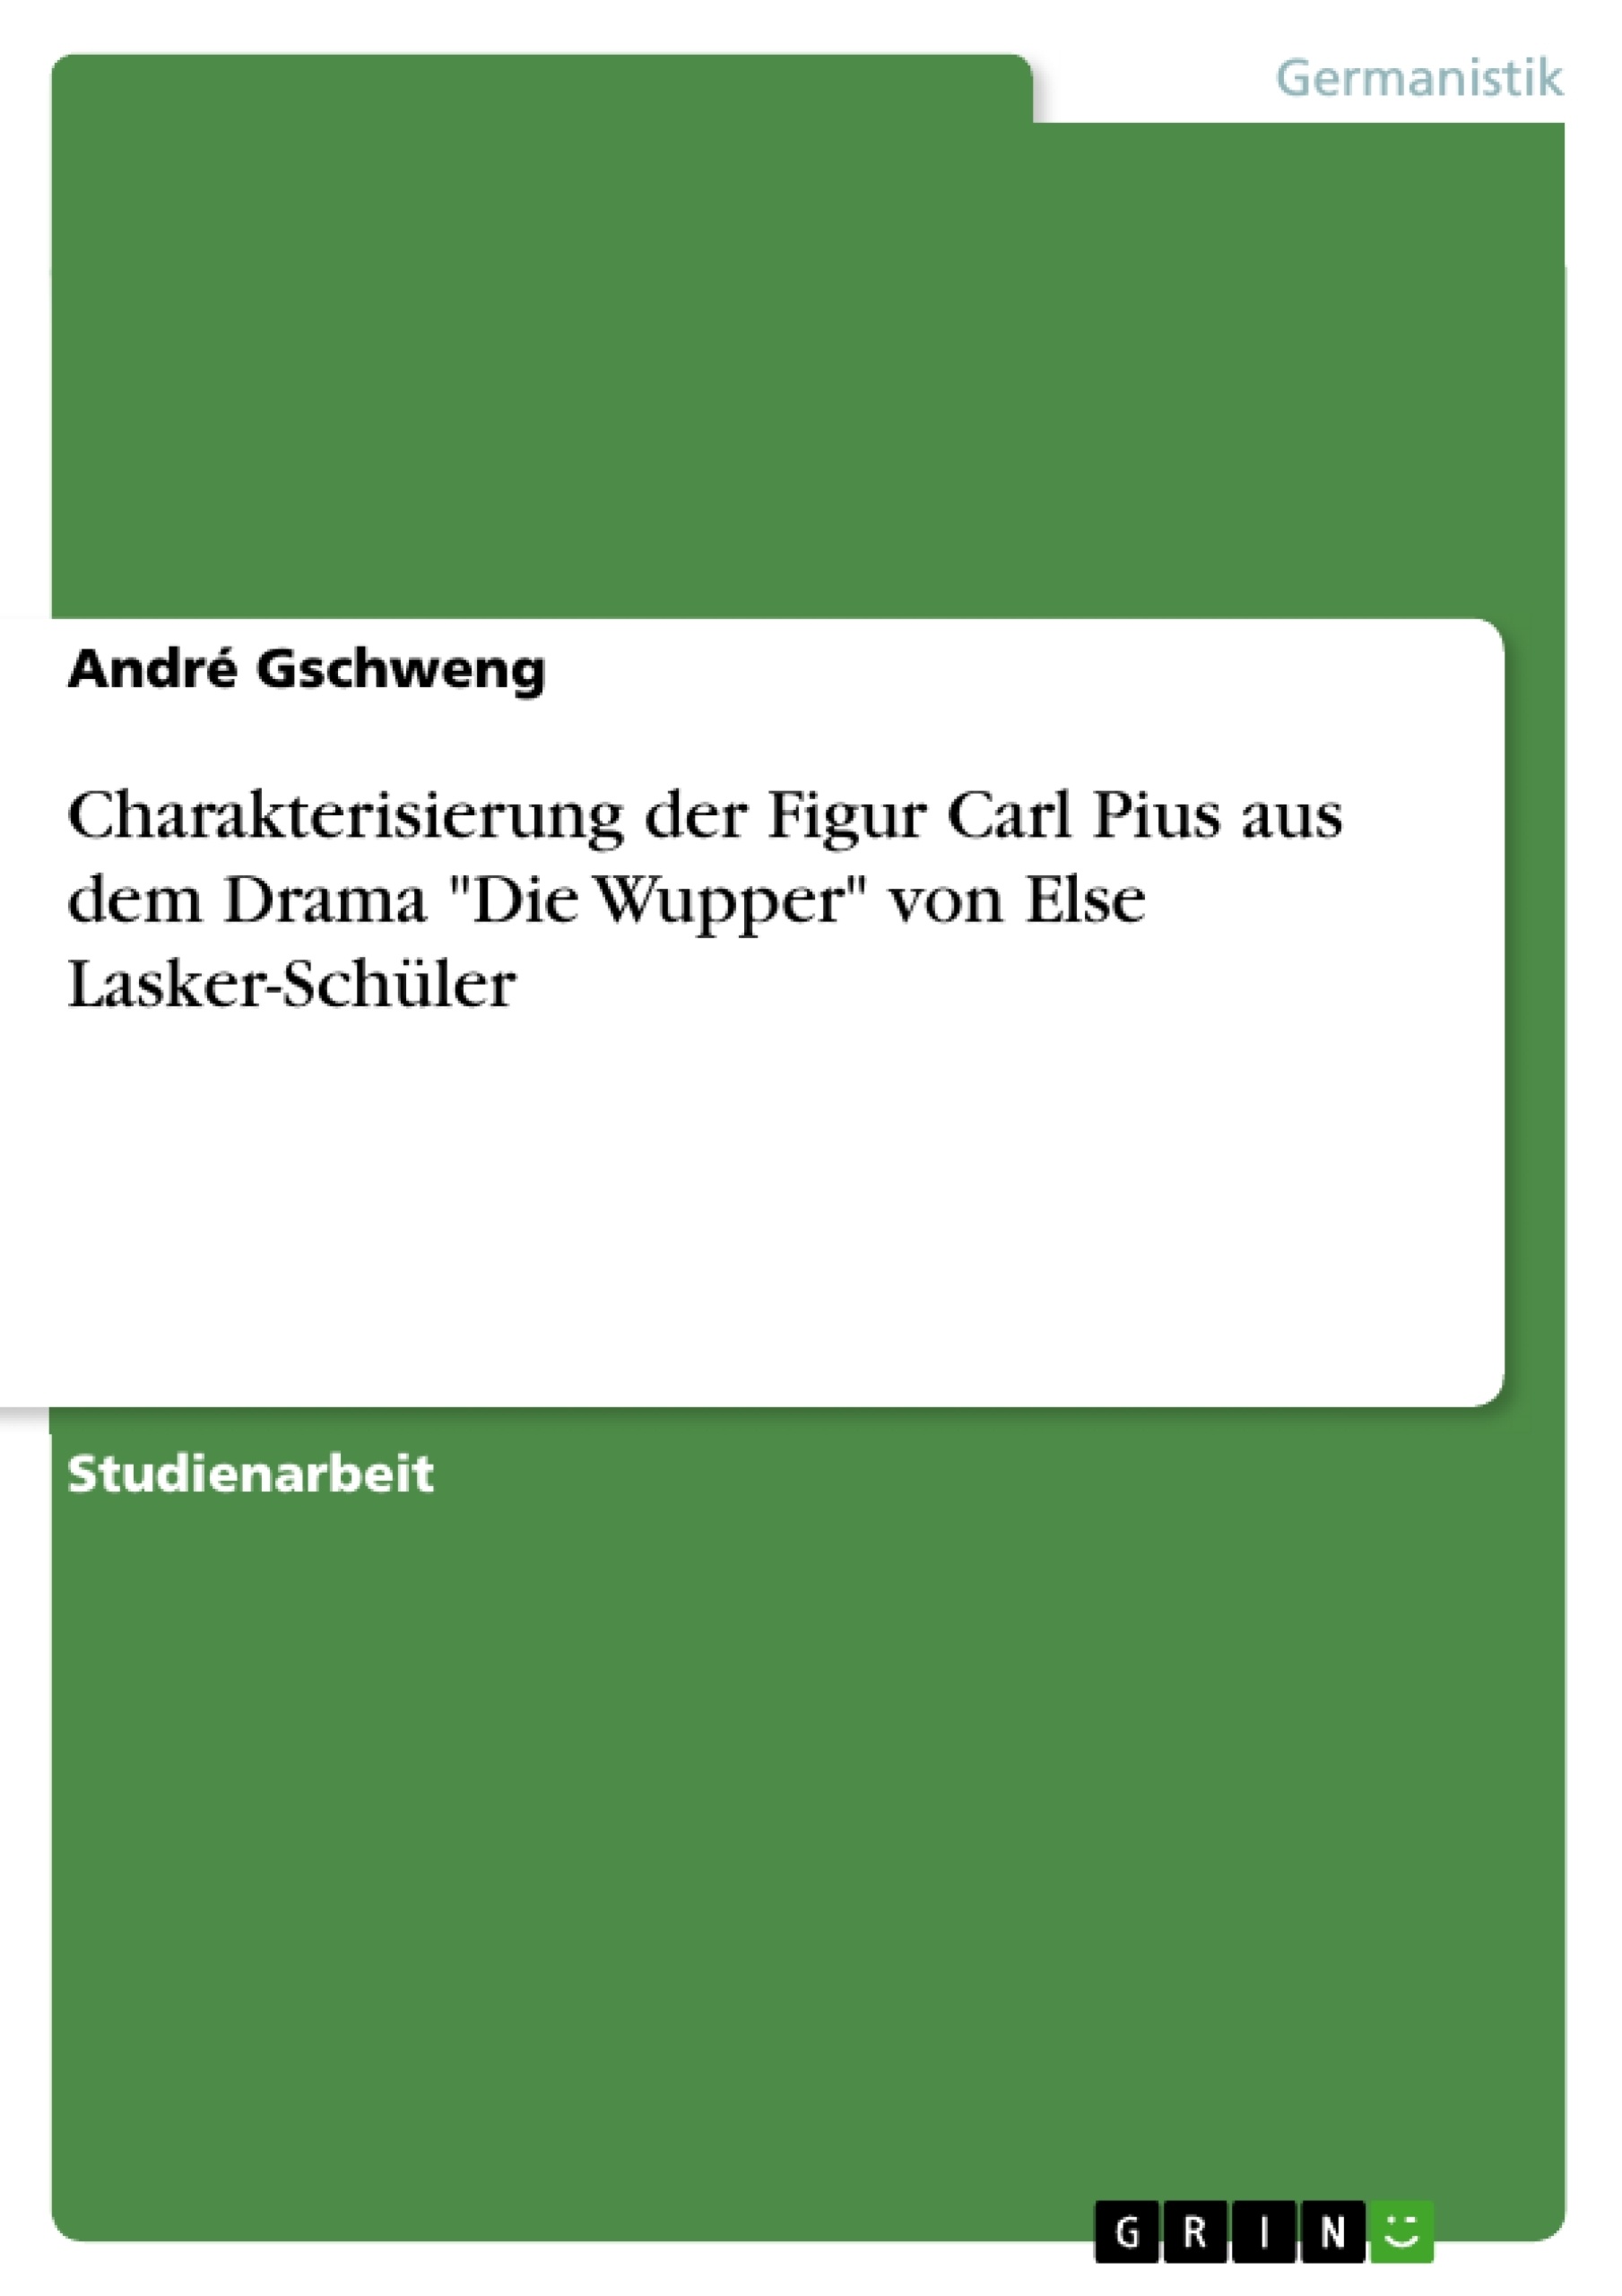 Título: Charakterisierung der Figur Carl Pius aus dem Drama "Die Wupper" von Else Lasker-Schüler